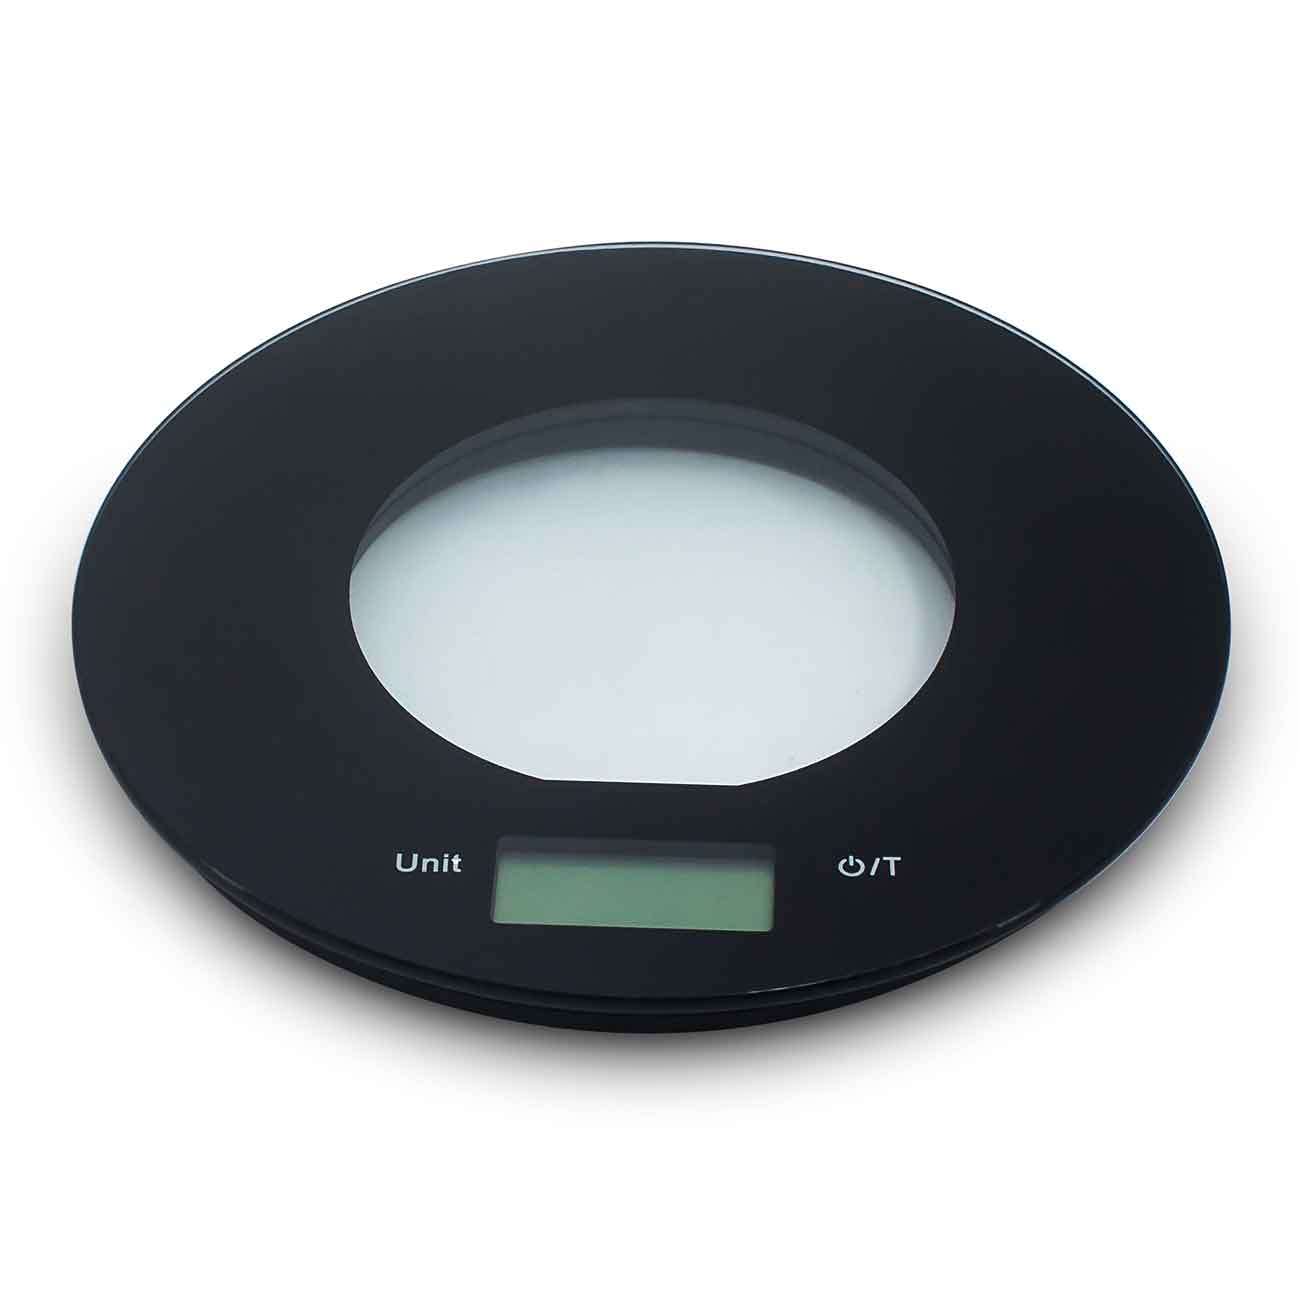 Кухненска дигитална везна SAPIR SP 1651 O, 5 кг, LCD екран, 2xAAA батерии, Черен